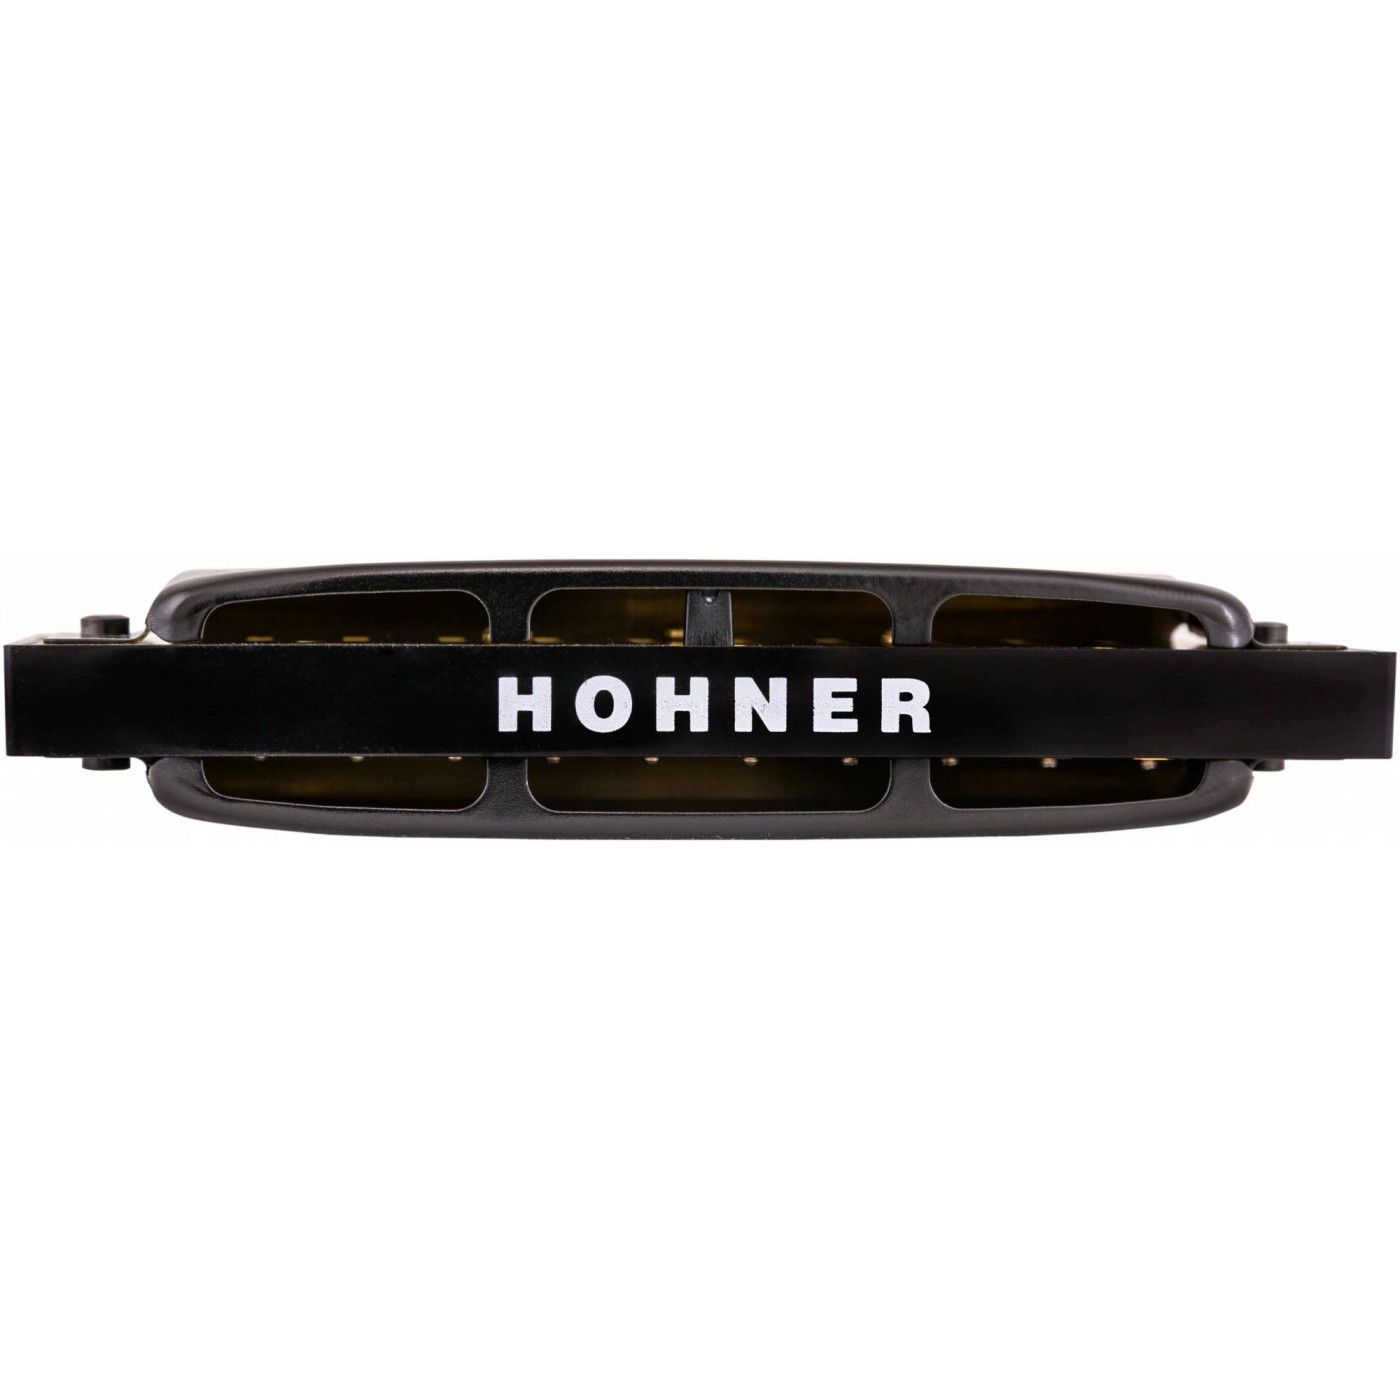 Детальная картинка товара Hohner Pro Harp 562/20 MS C в магазине Музыкальная Тема